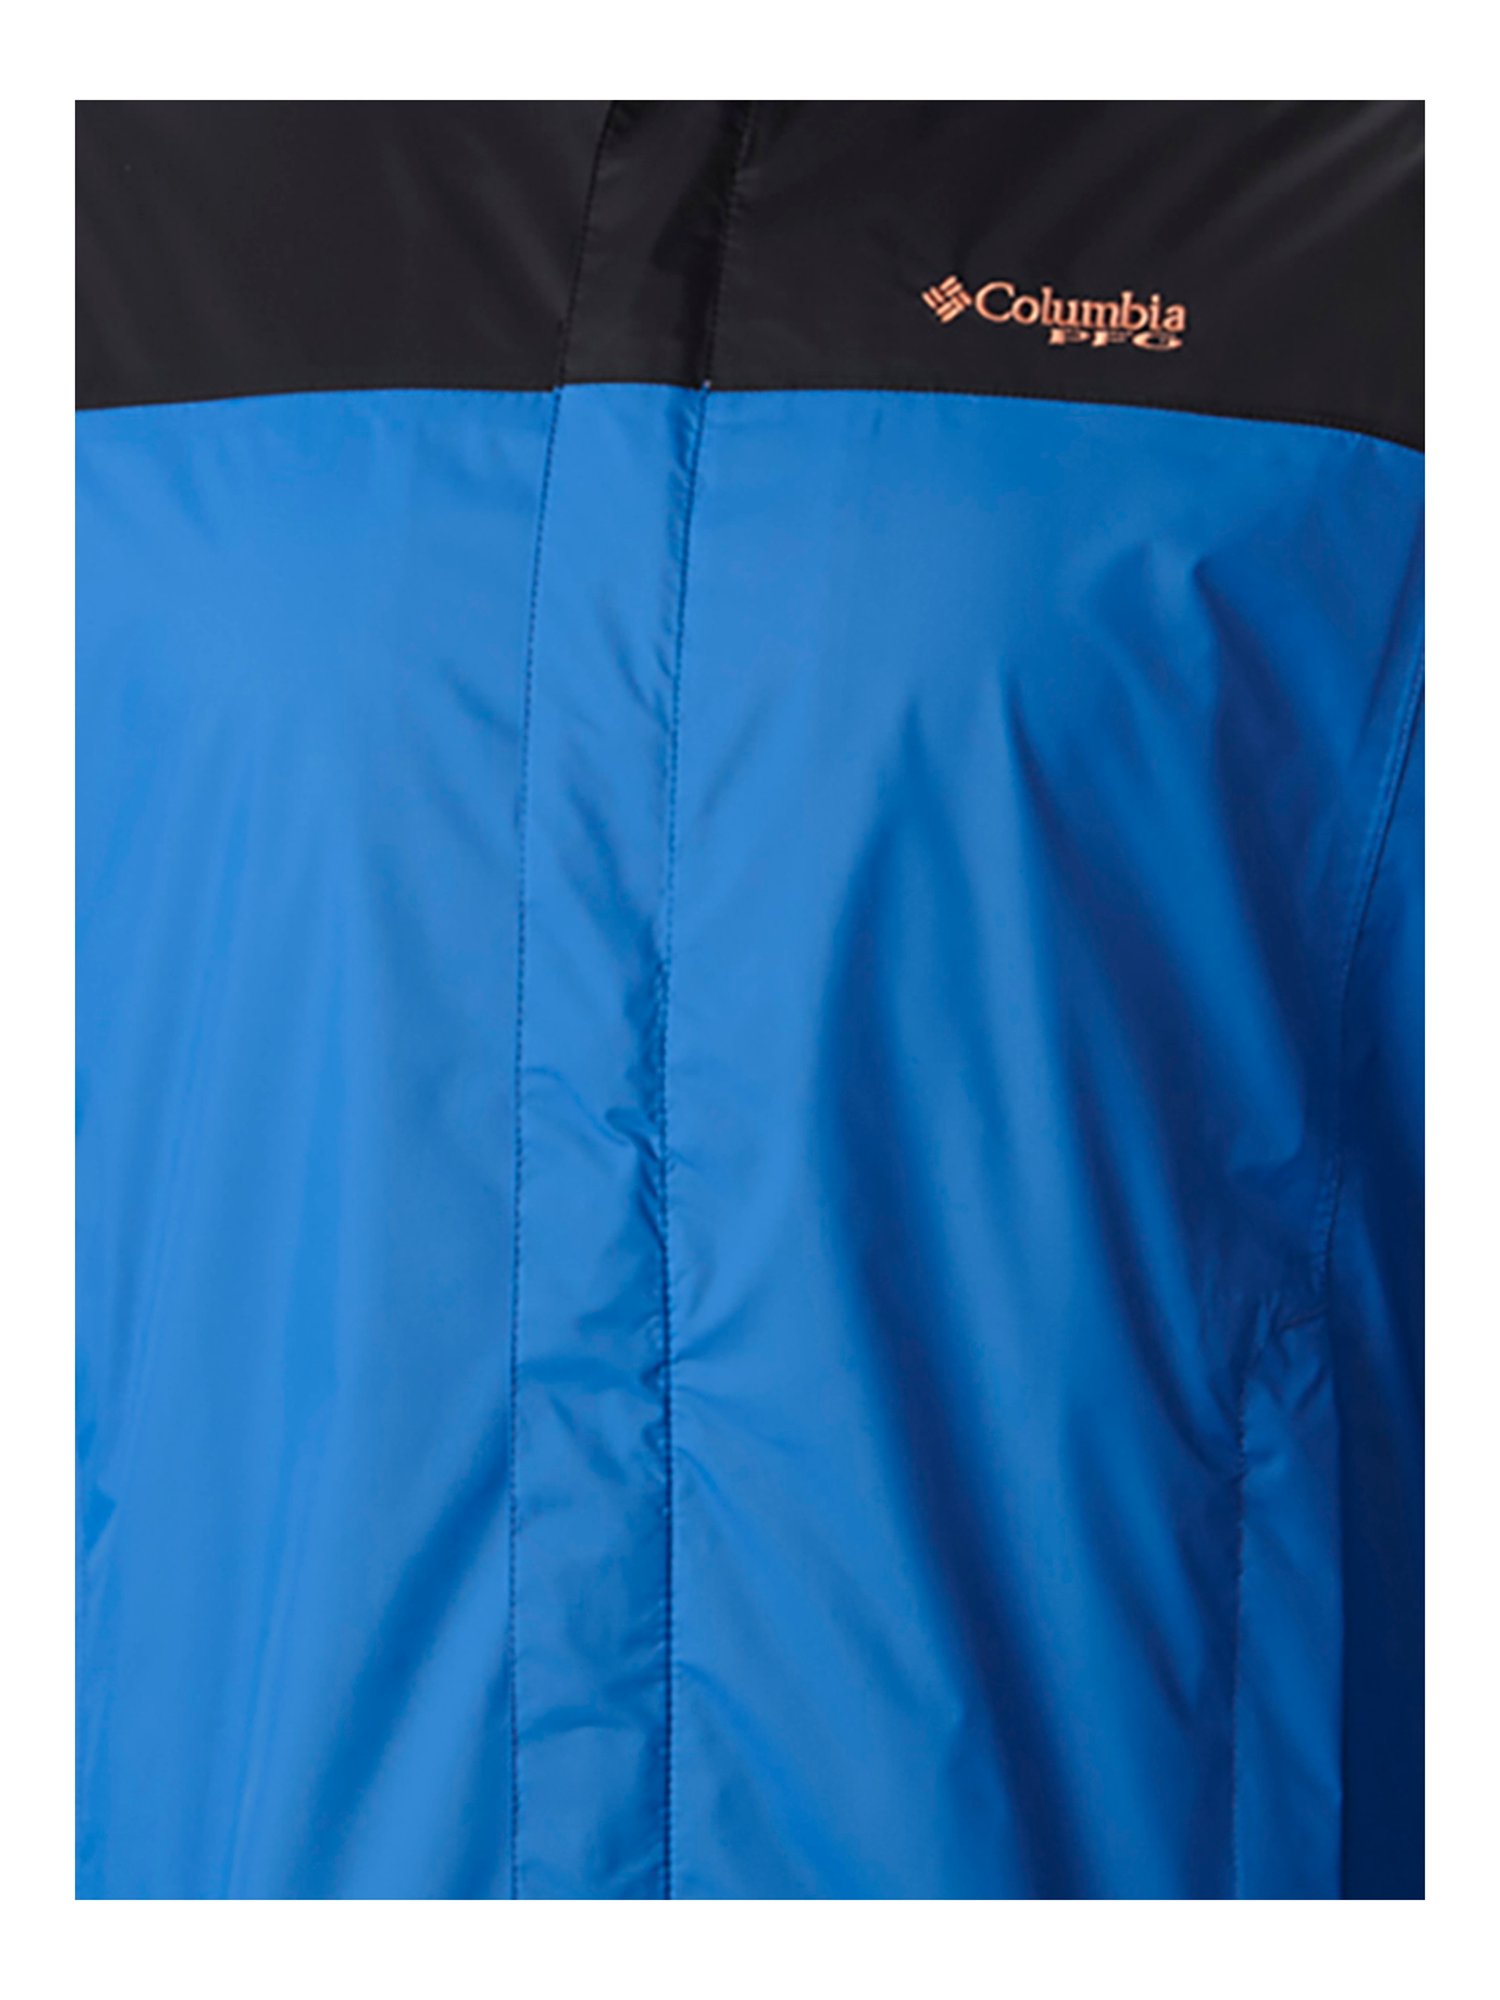 Buy Columbia Blue Full Sleeves Nylon Hooded Jacket for Men's Online @ Tata  CLiQ